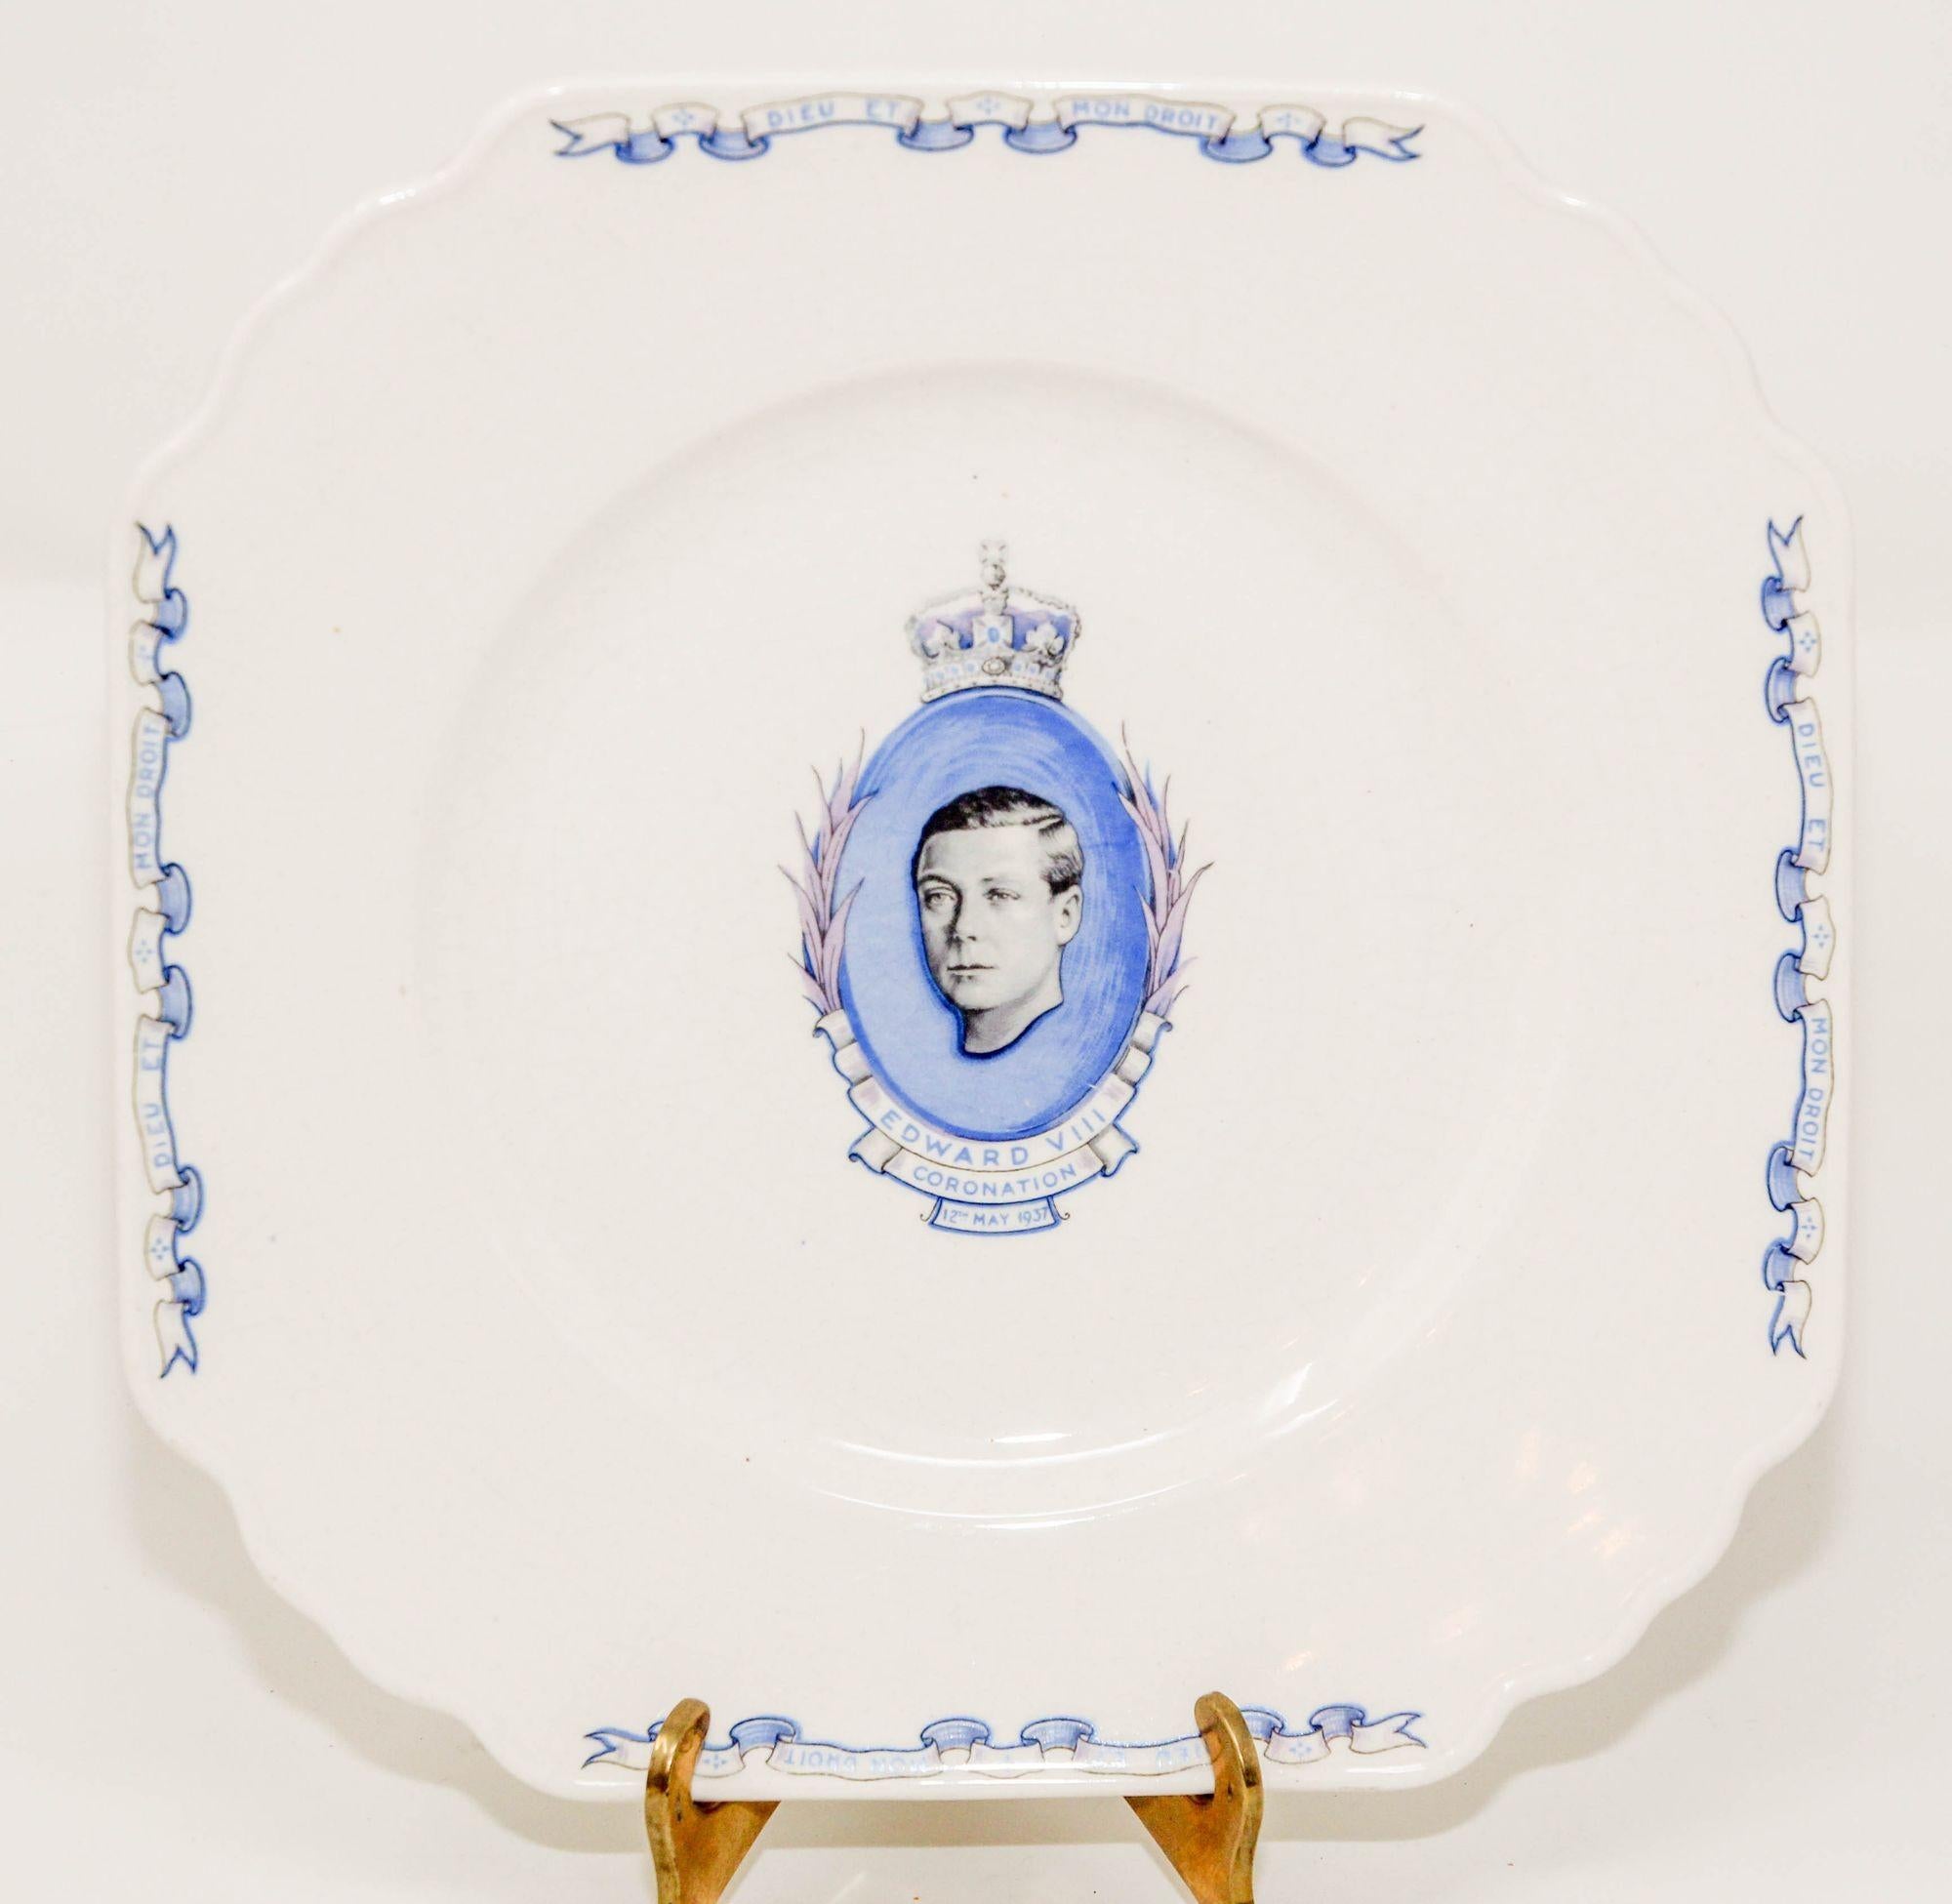 Assiette de couronnement en porcelaine de collection royale Edward VIII 1936 Wedgewood Angleterre 11